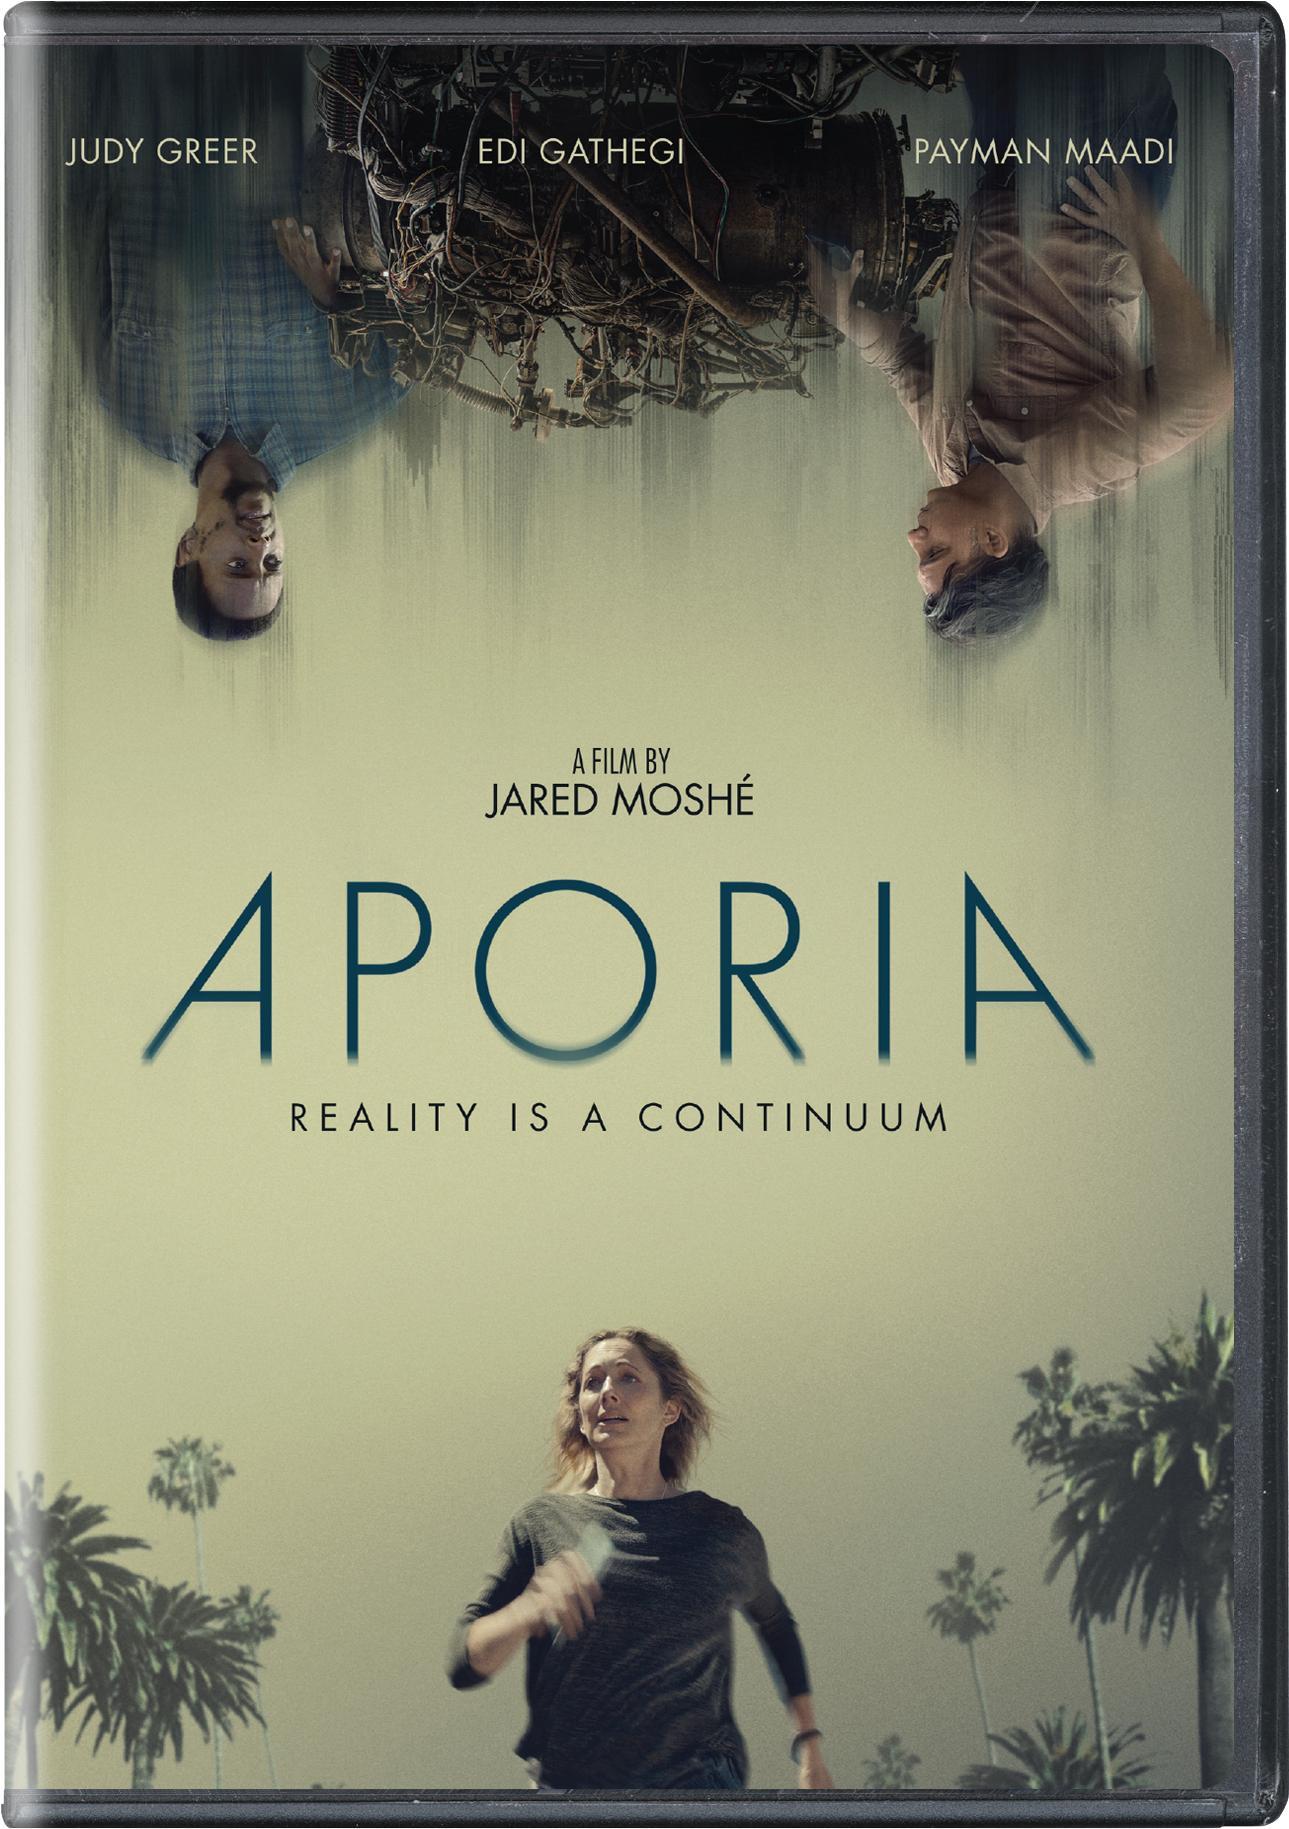 Aporia - DVD   - Sci Fi Movies On DVD - Movies On GRUV